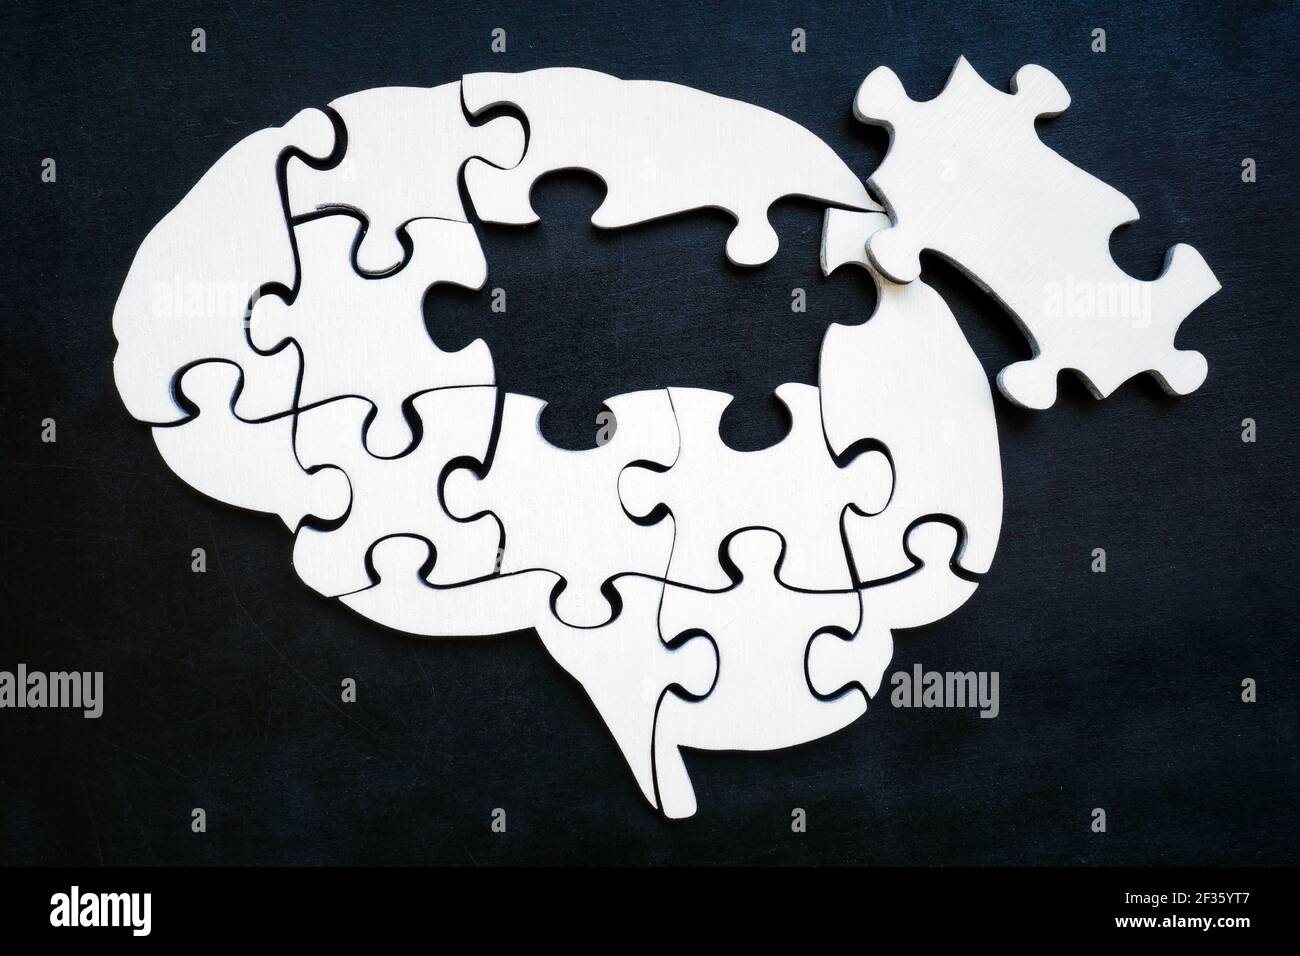 Cerebro de piezas de rompecabezas con una falta. Problemas de memoria y enfermedad de Alzheimer. Foto de stock